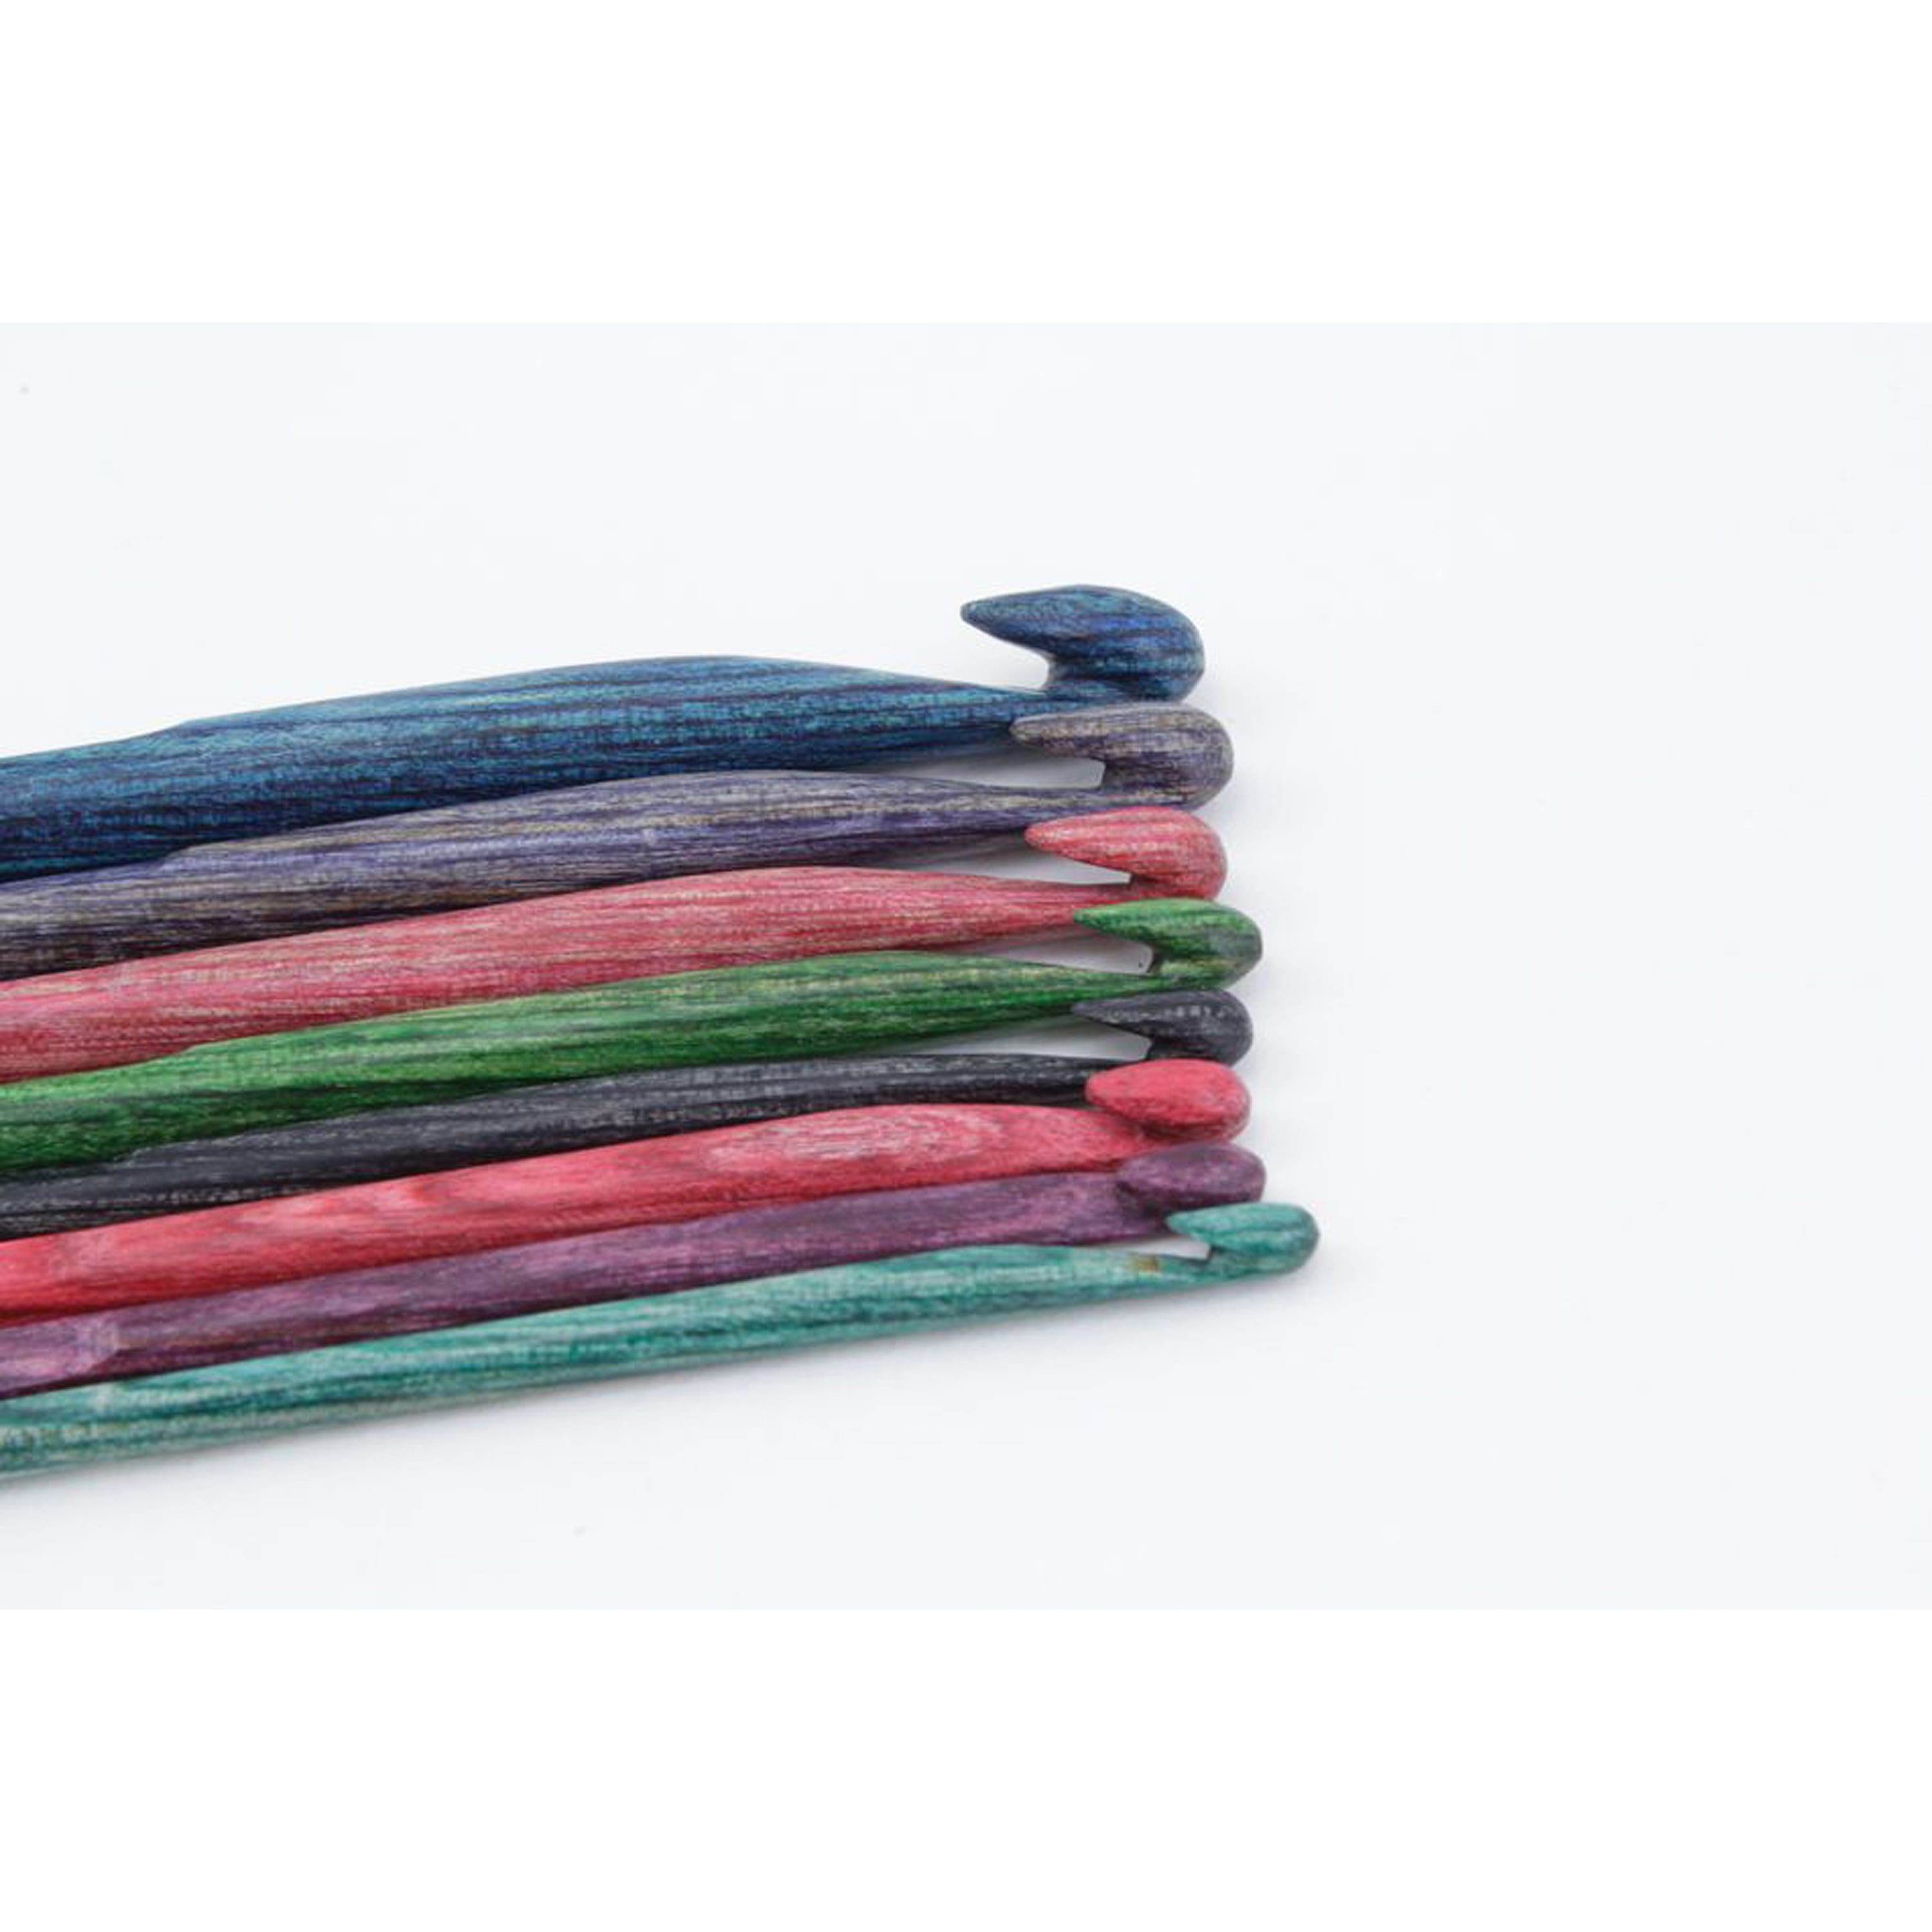 Dreamz Wood Crochet Hooks by Knitter's Pride – Heavenly Yarns